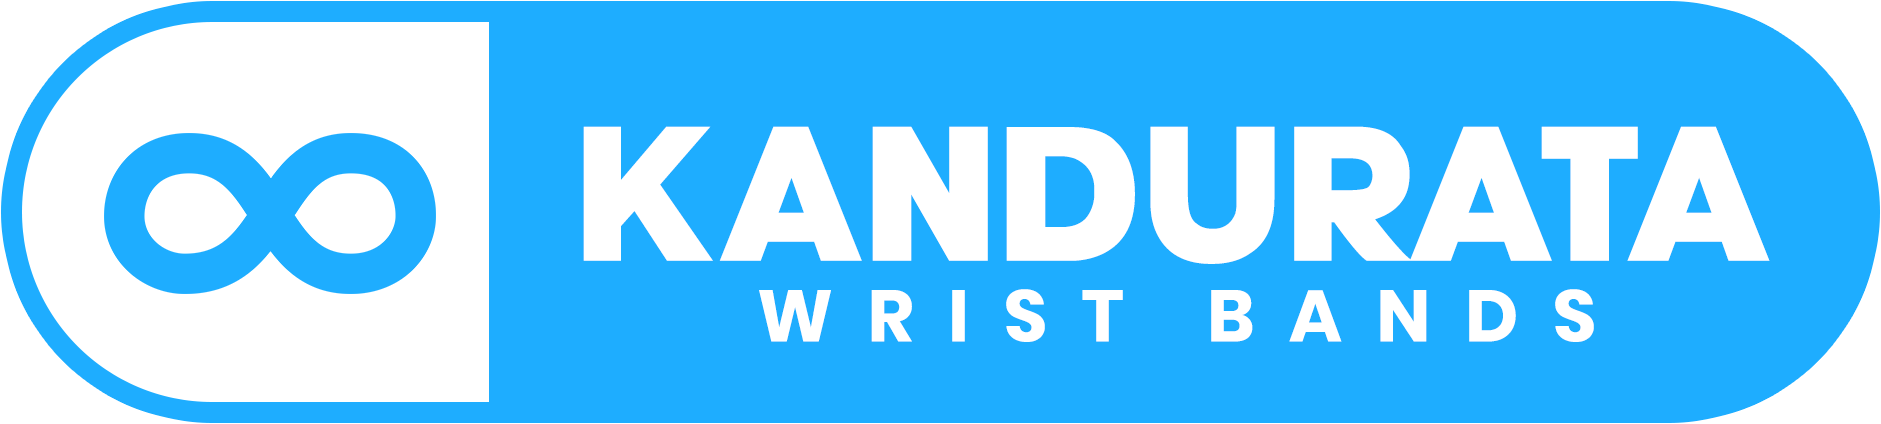 kandurata wristbands logo